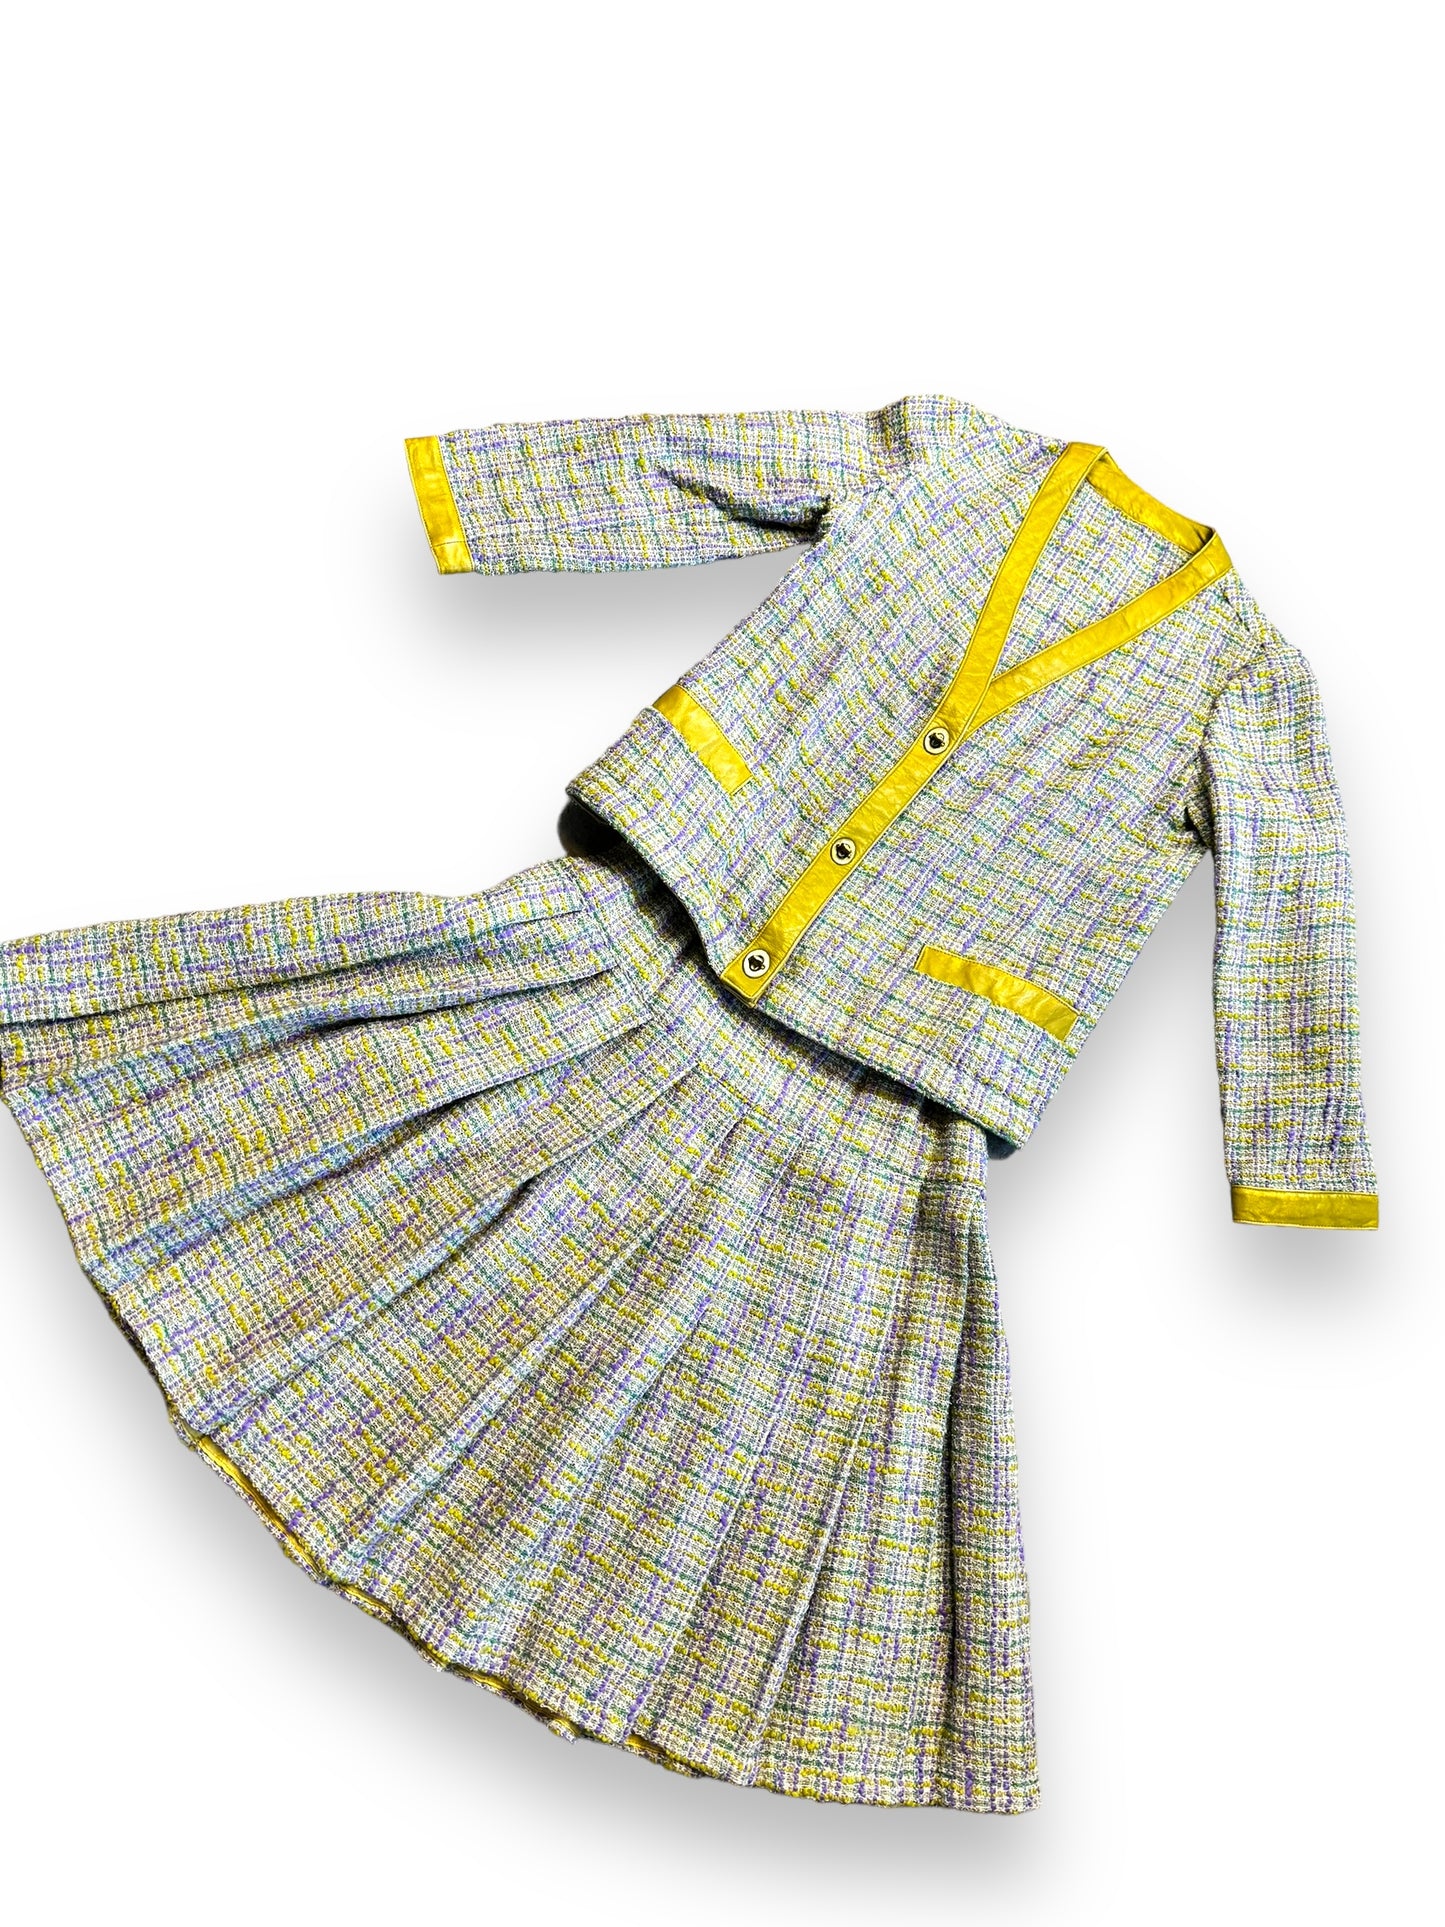 Vintage Bonnie Cashin Sills Tweed 2 Piece Suit